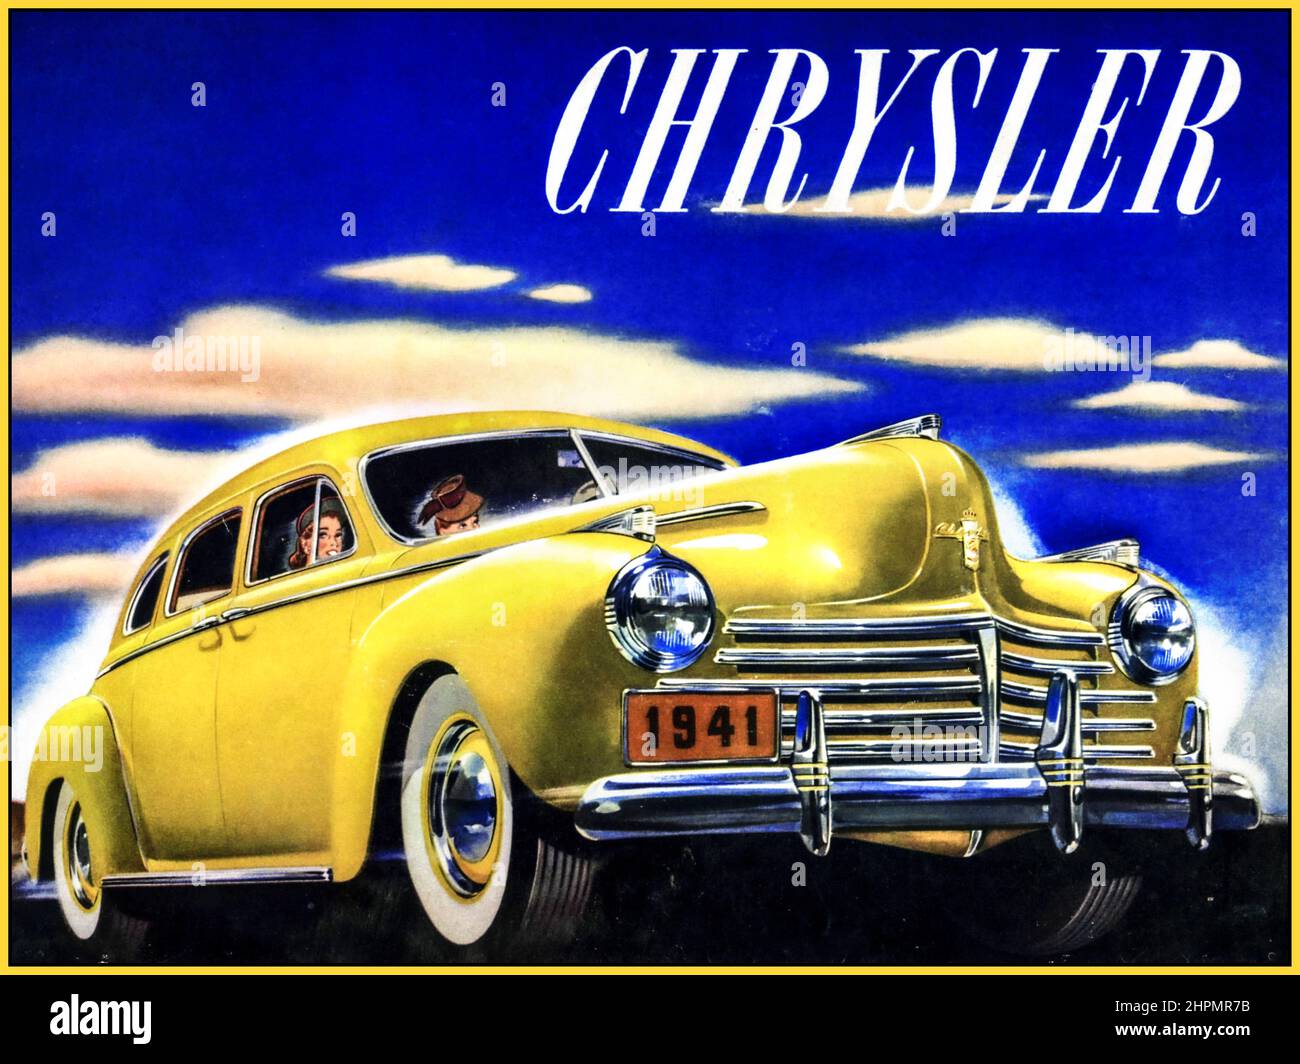 1941 Chrysler Limousine 6-Sitzer American Automobile Broschüre Illustration USA die Imperial Crown Series C-33 von 1941 blieb exklusiv und es gab Sondermodelle: 3-Gang-Schaltgetriebe mit Fluid Drive mit Overdrive Vacamatic 3-Gang-Halbautomatik Stockfoto